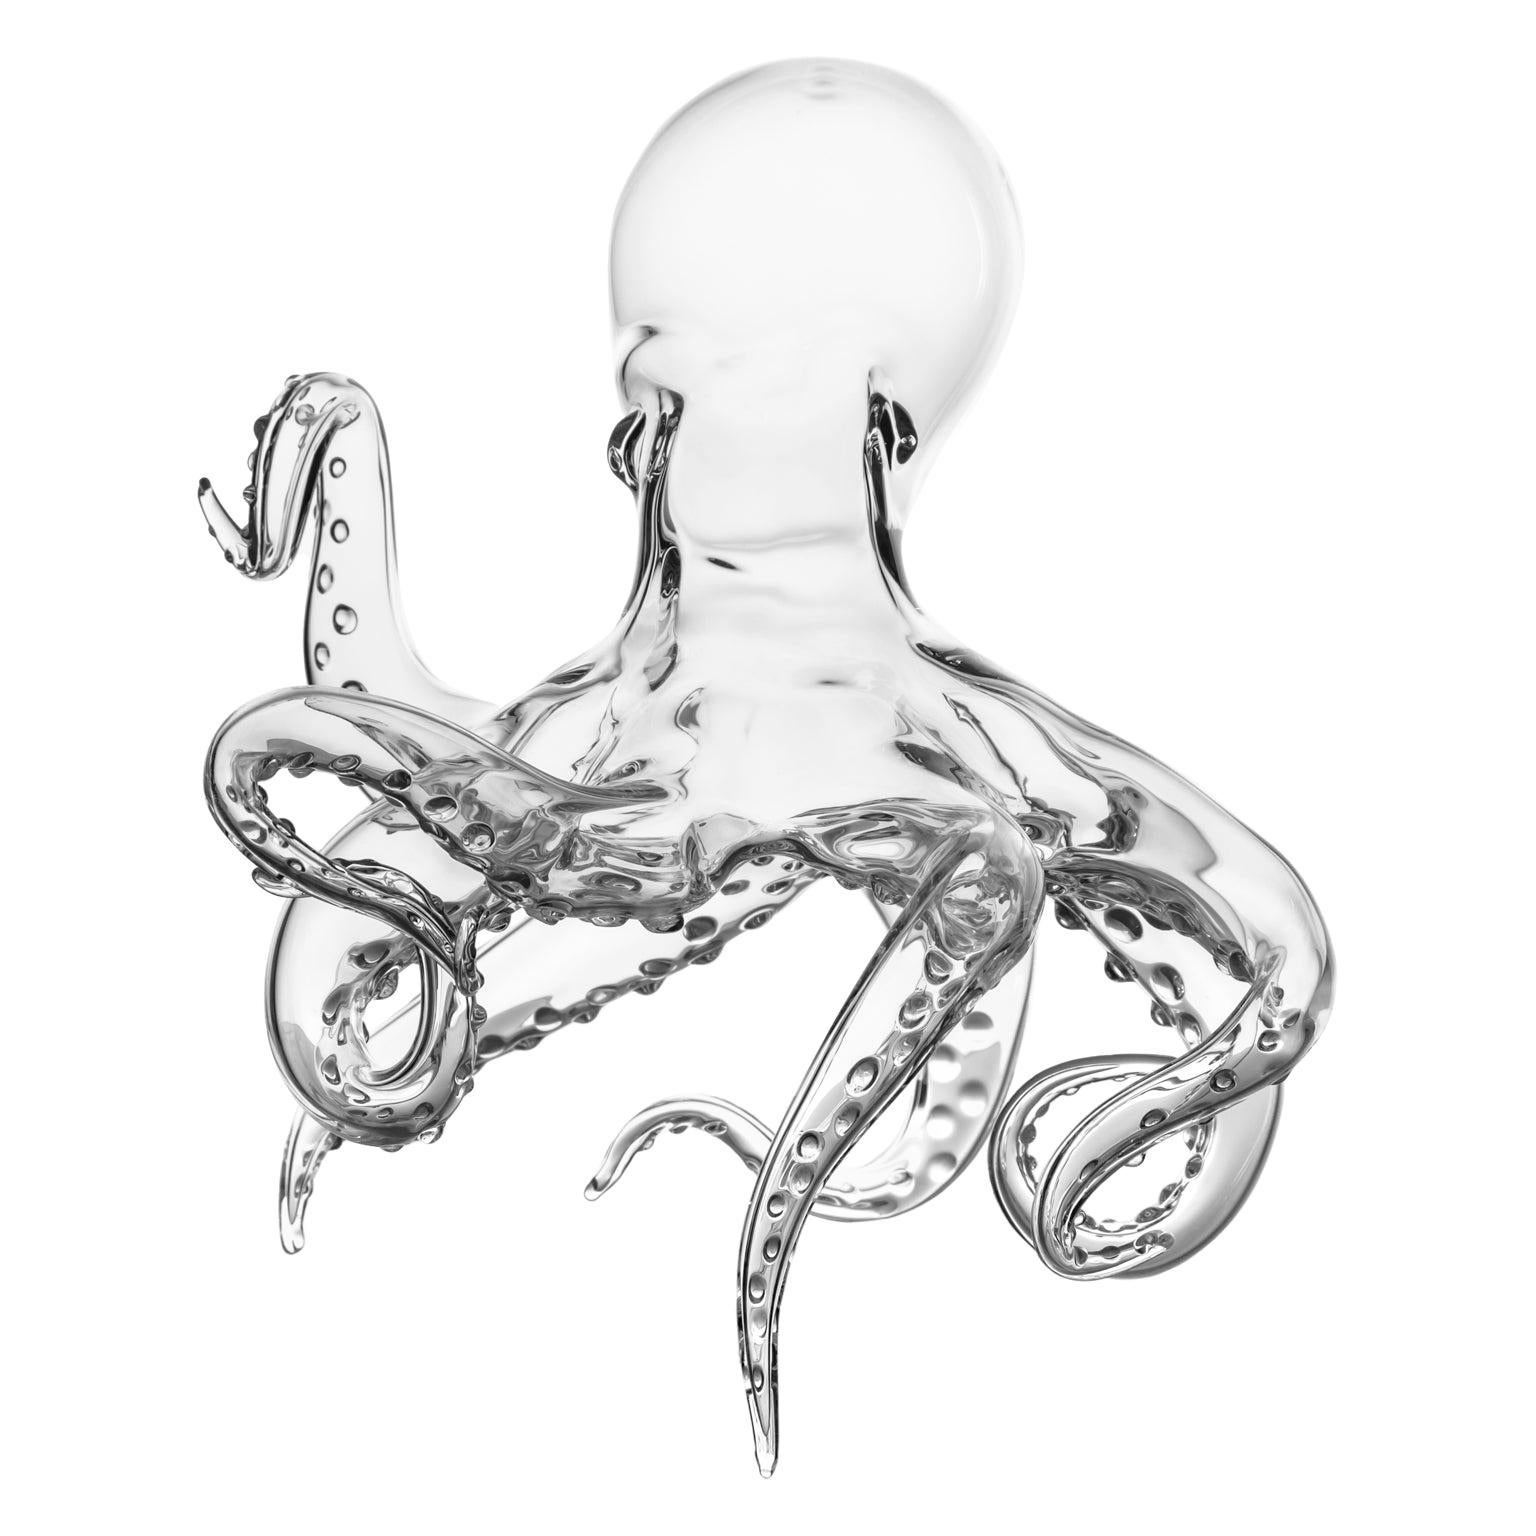 'Polpo' Hand Blown Glass Octopus Sculpture